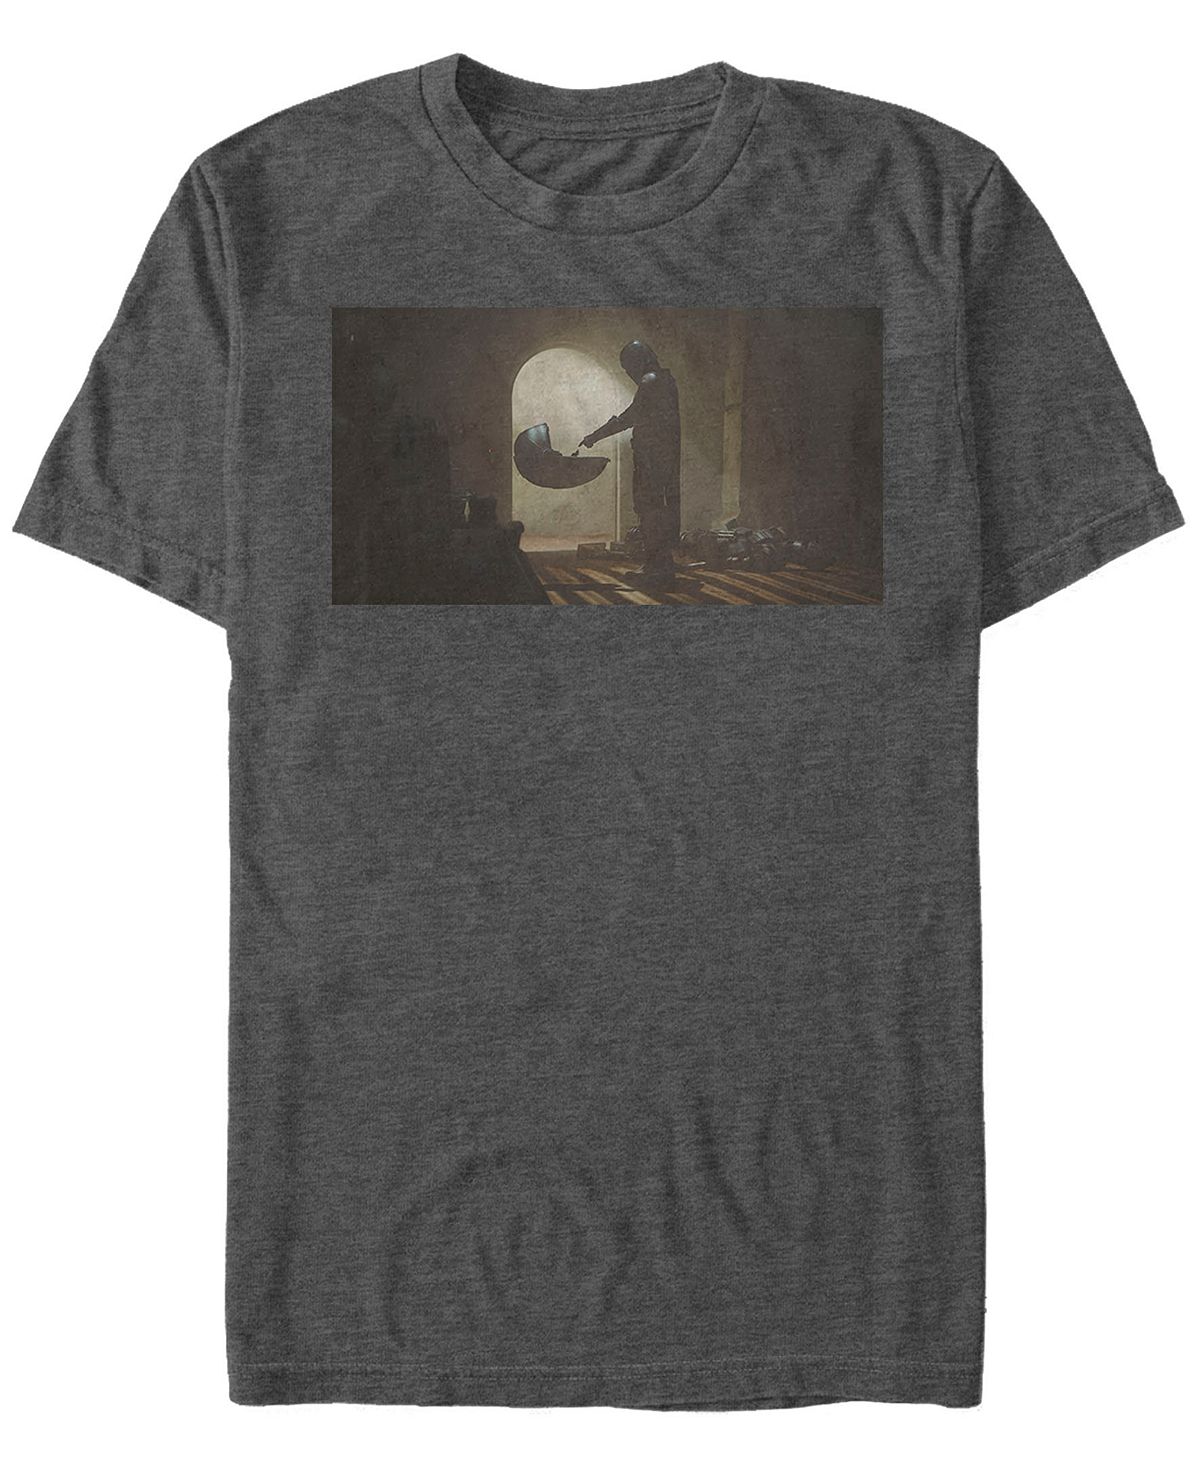 цена Звездные войны мандалорец первая встреча с коротким рукавом мужская футболка Fifth Sun, темно-серый